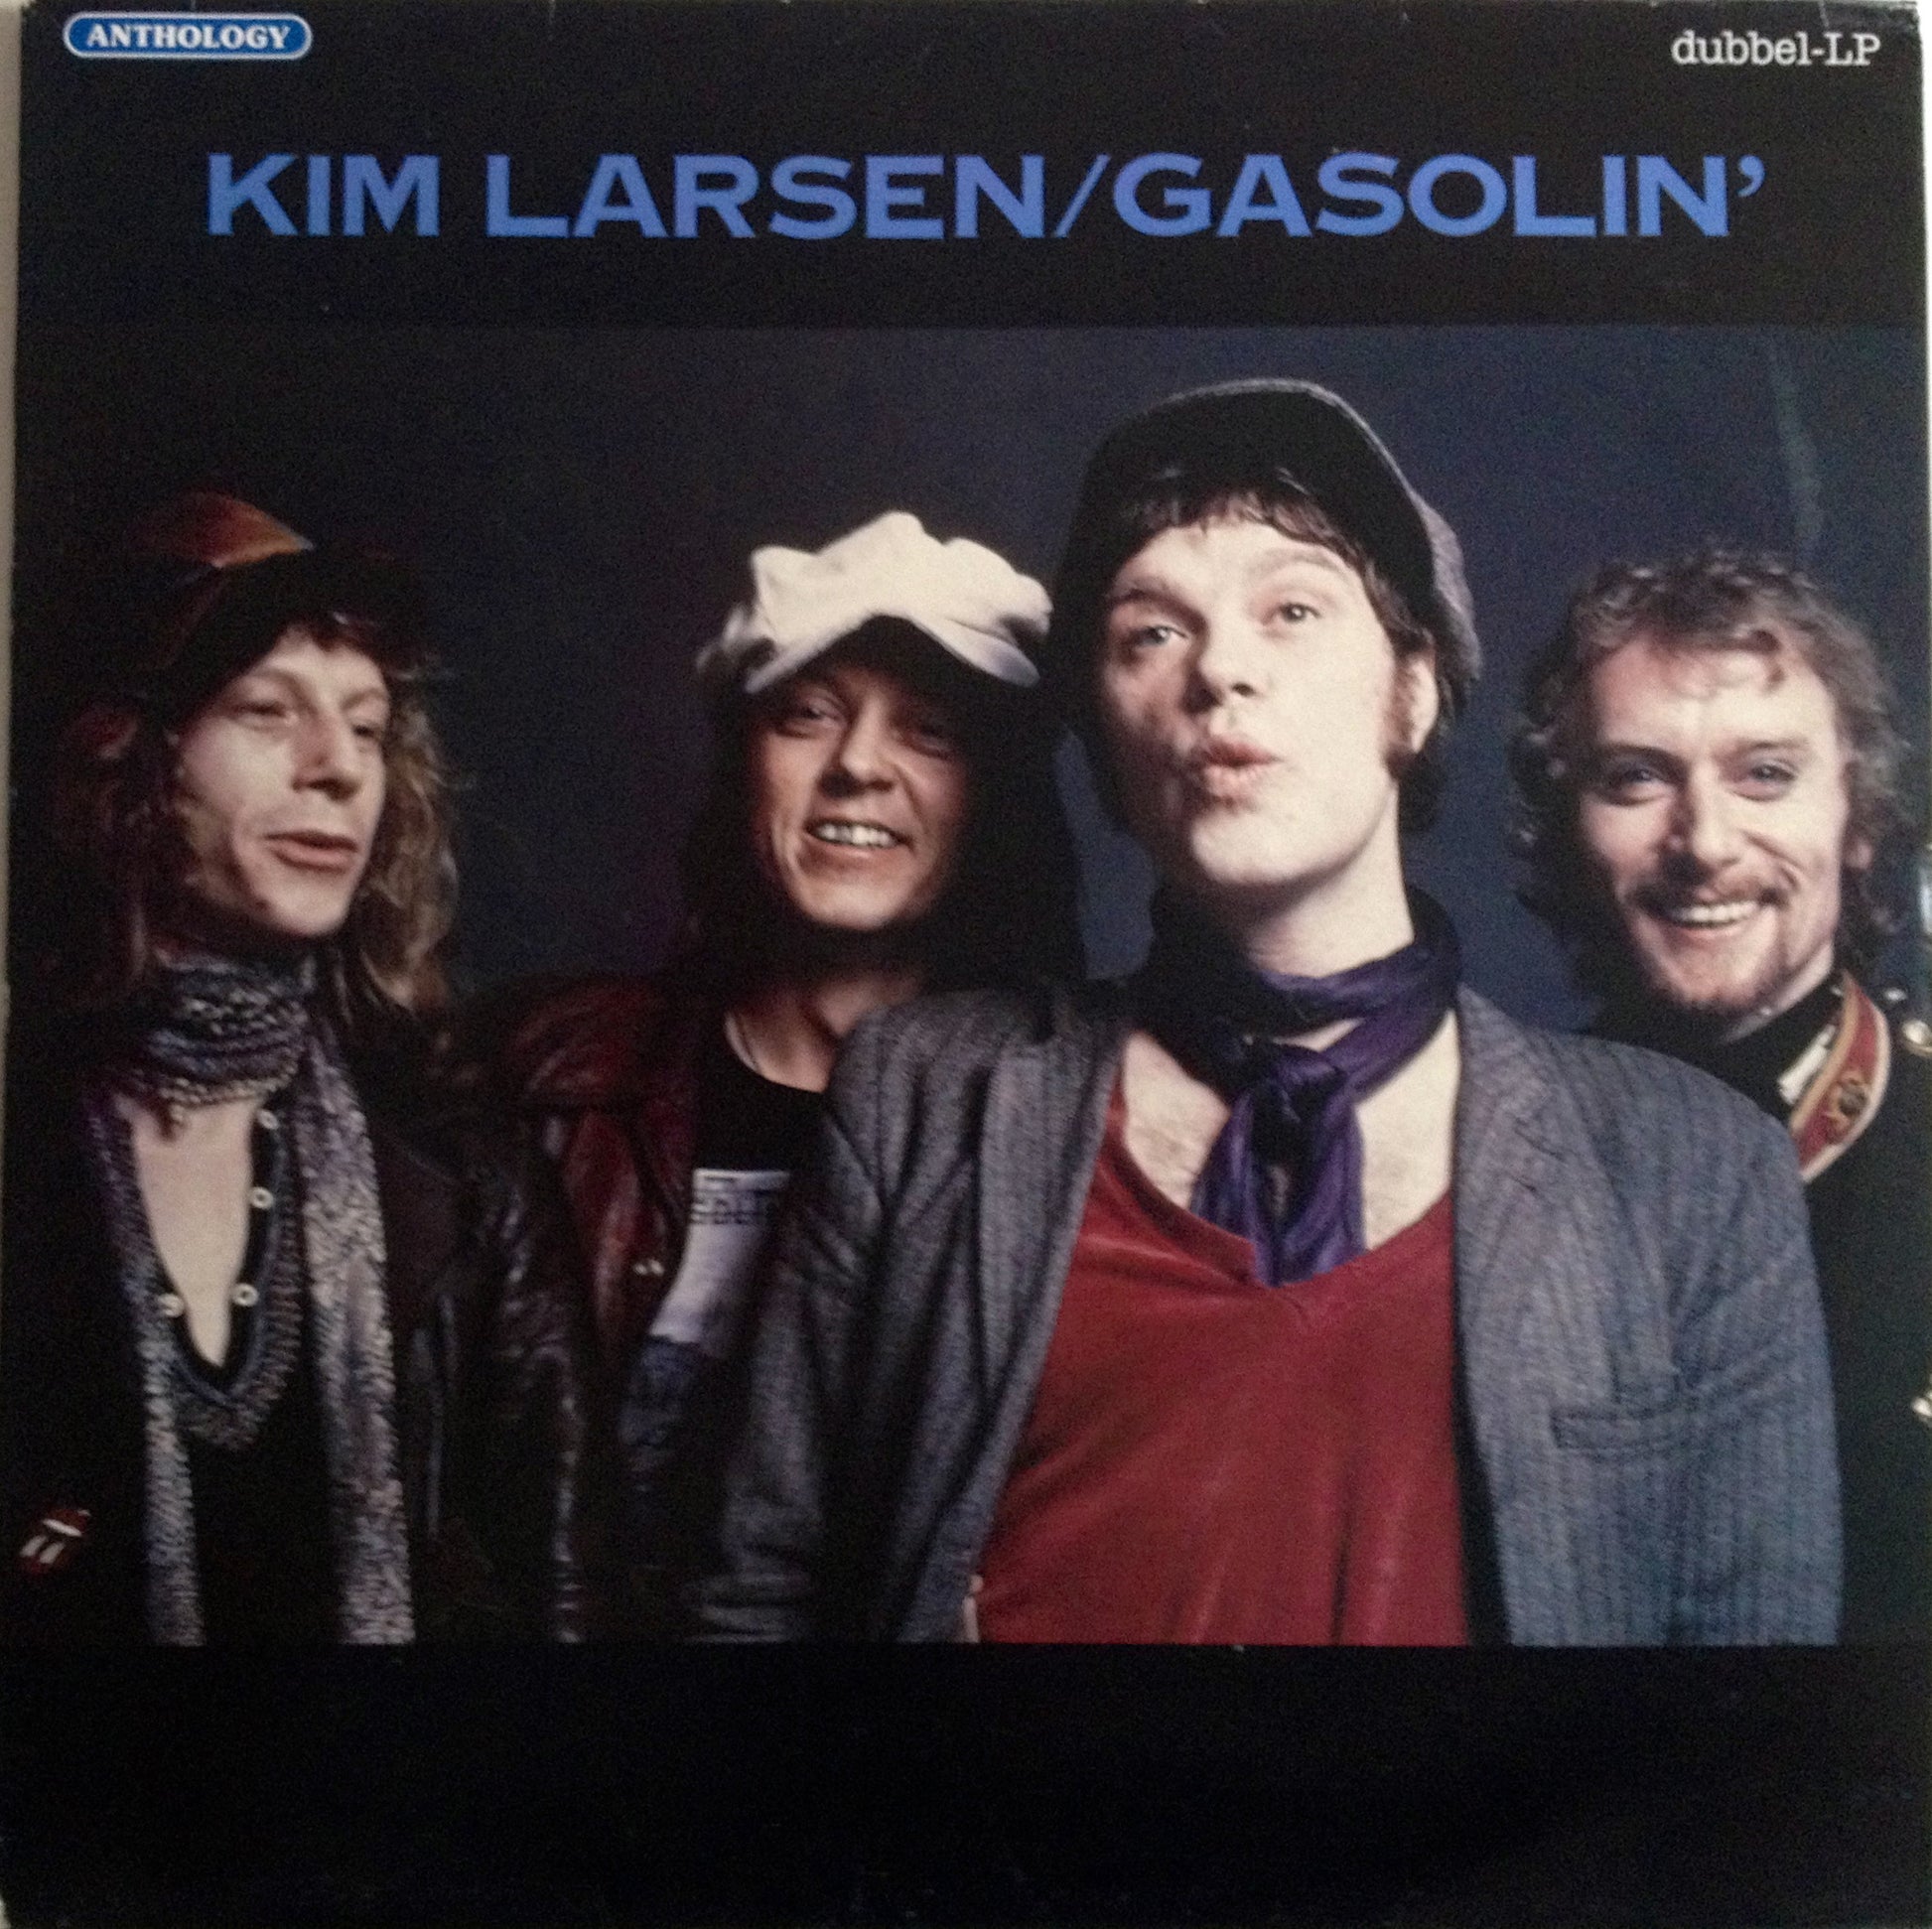 Larsen, Kim/Gasolin' - Anthology.